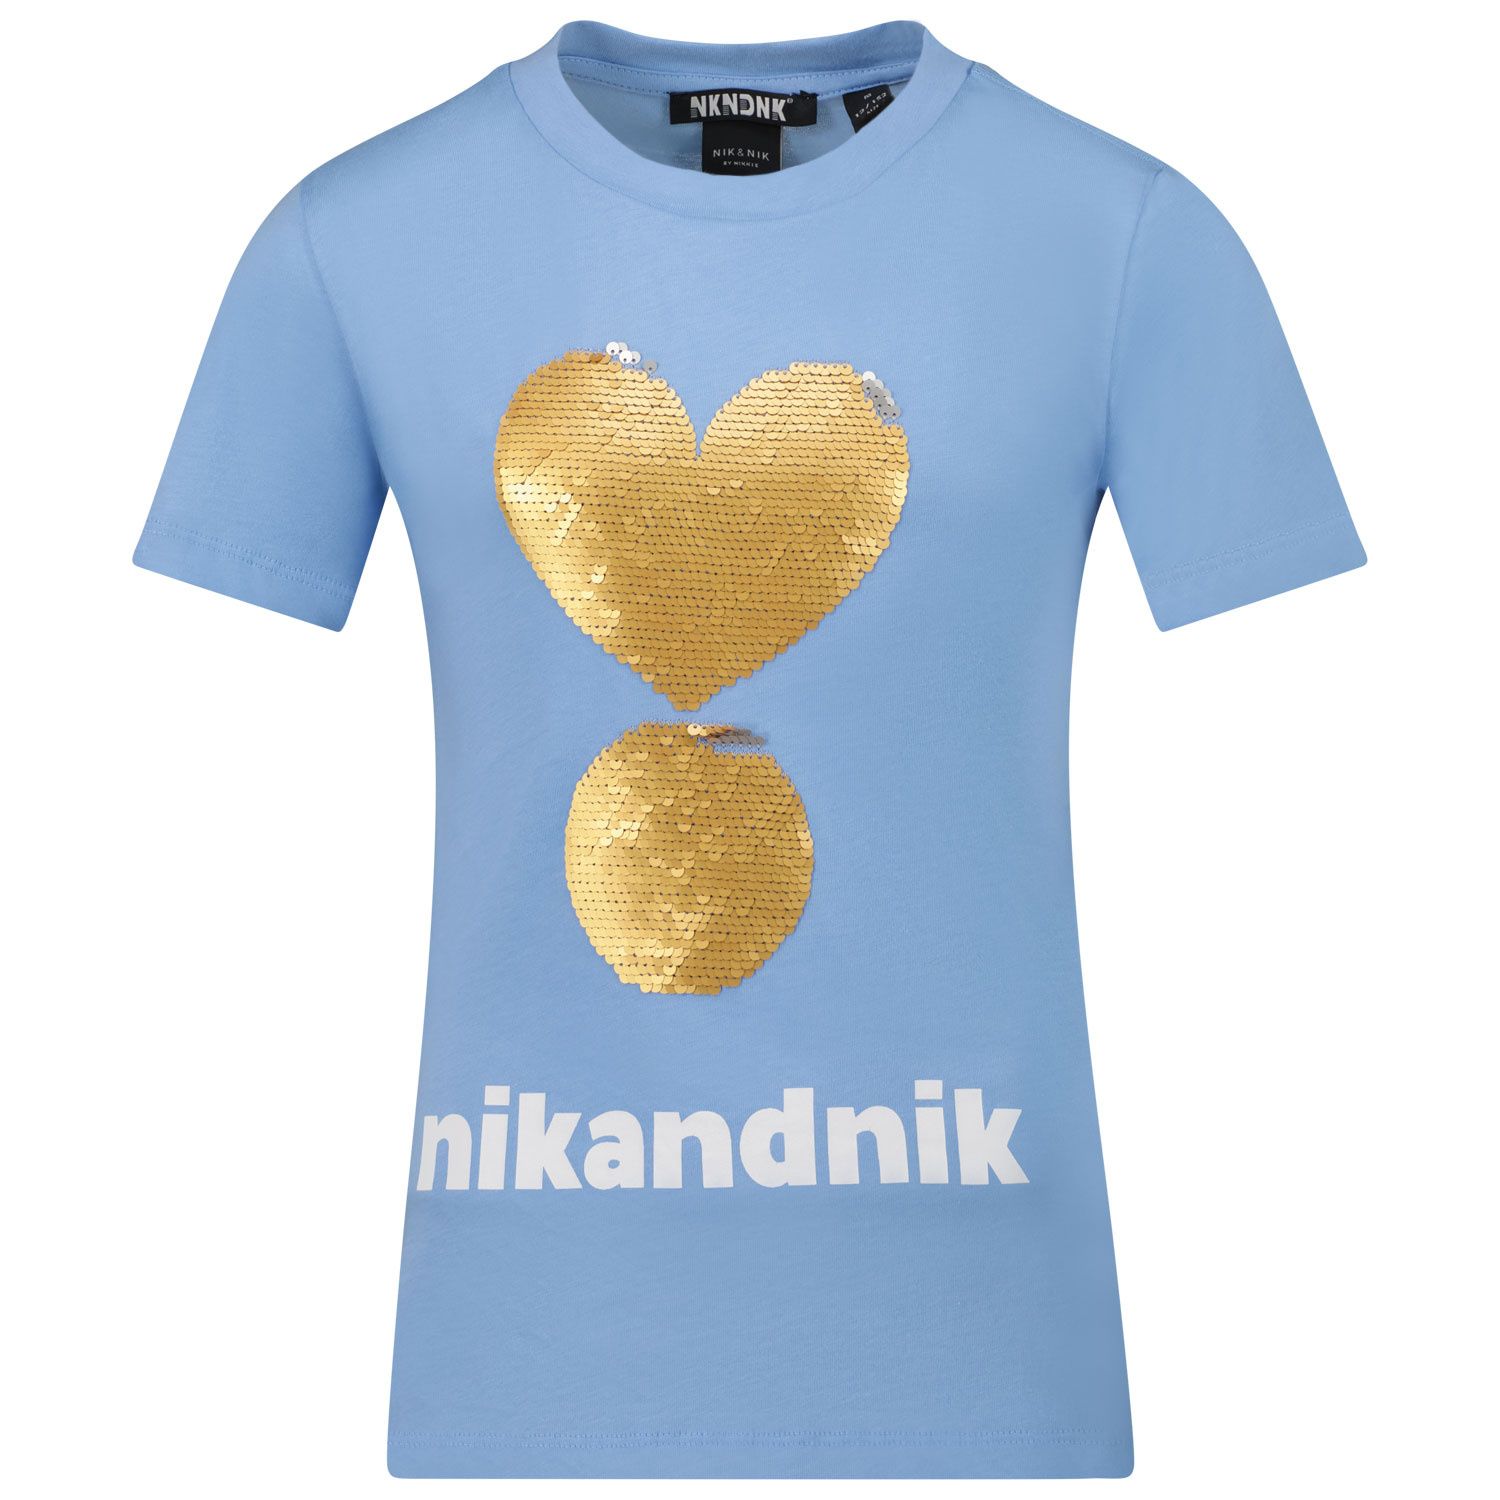 Afbeelding van NIK&NIK G8957 kinder t-shirt licht blauw